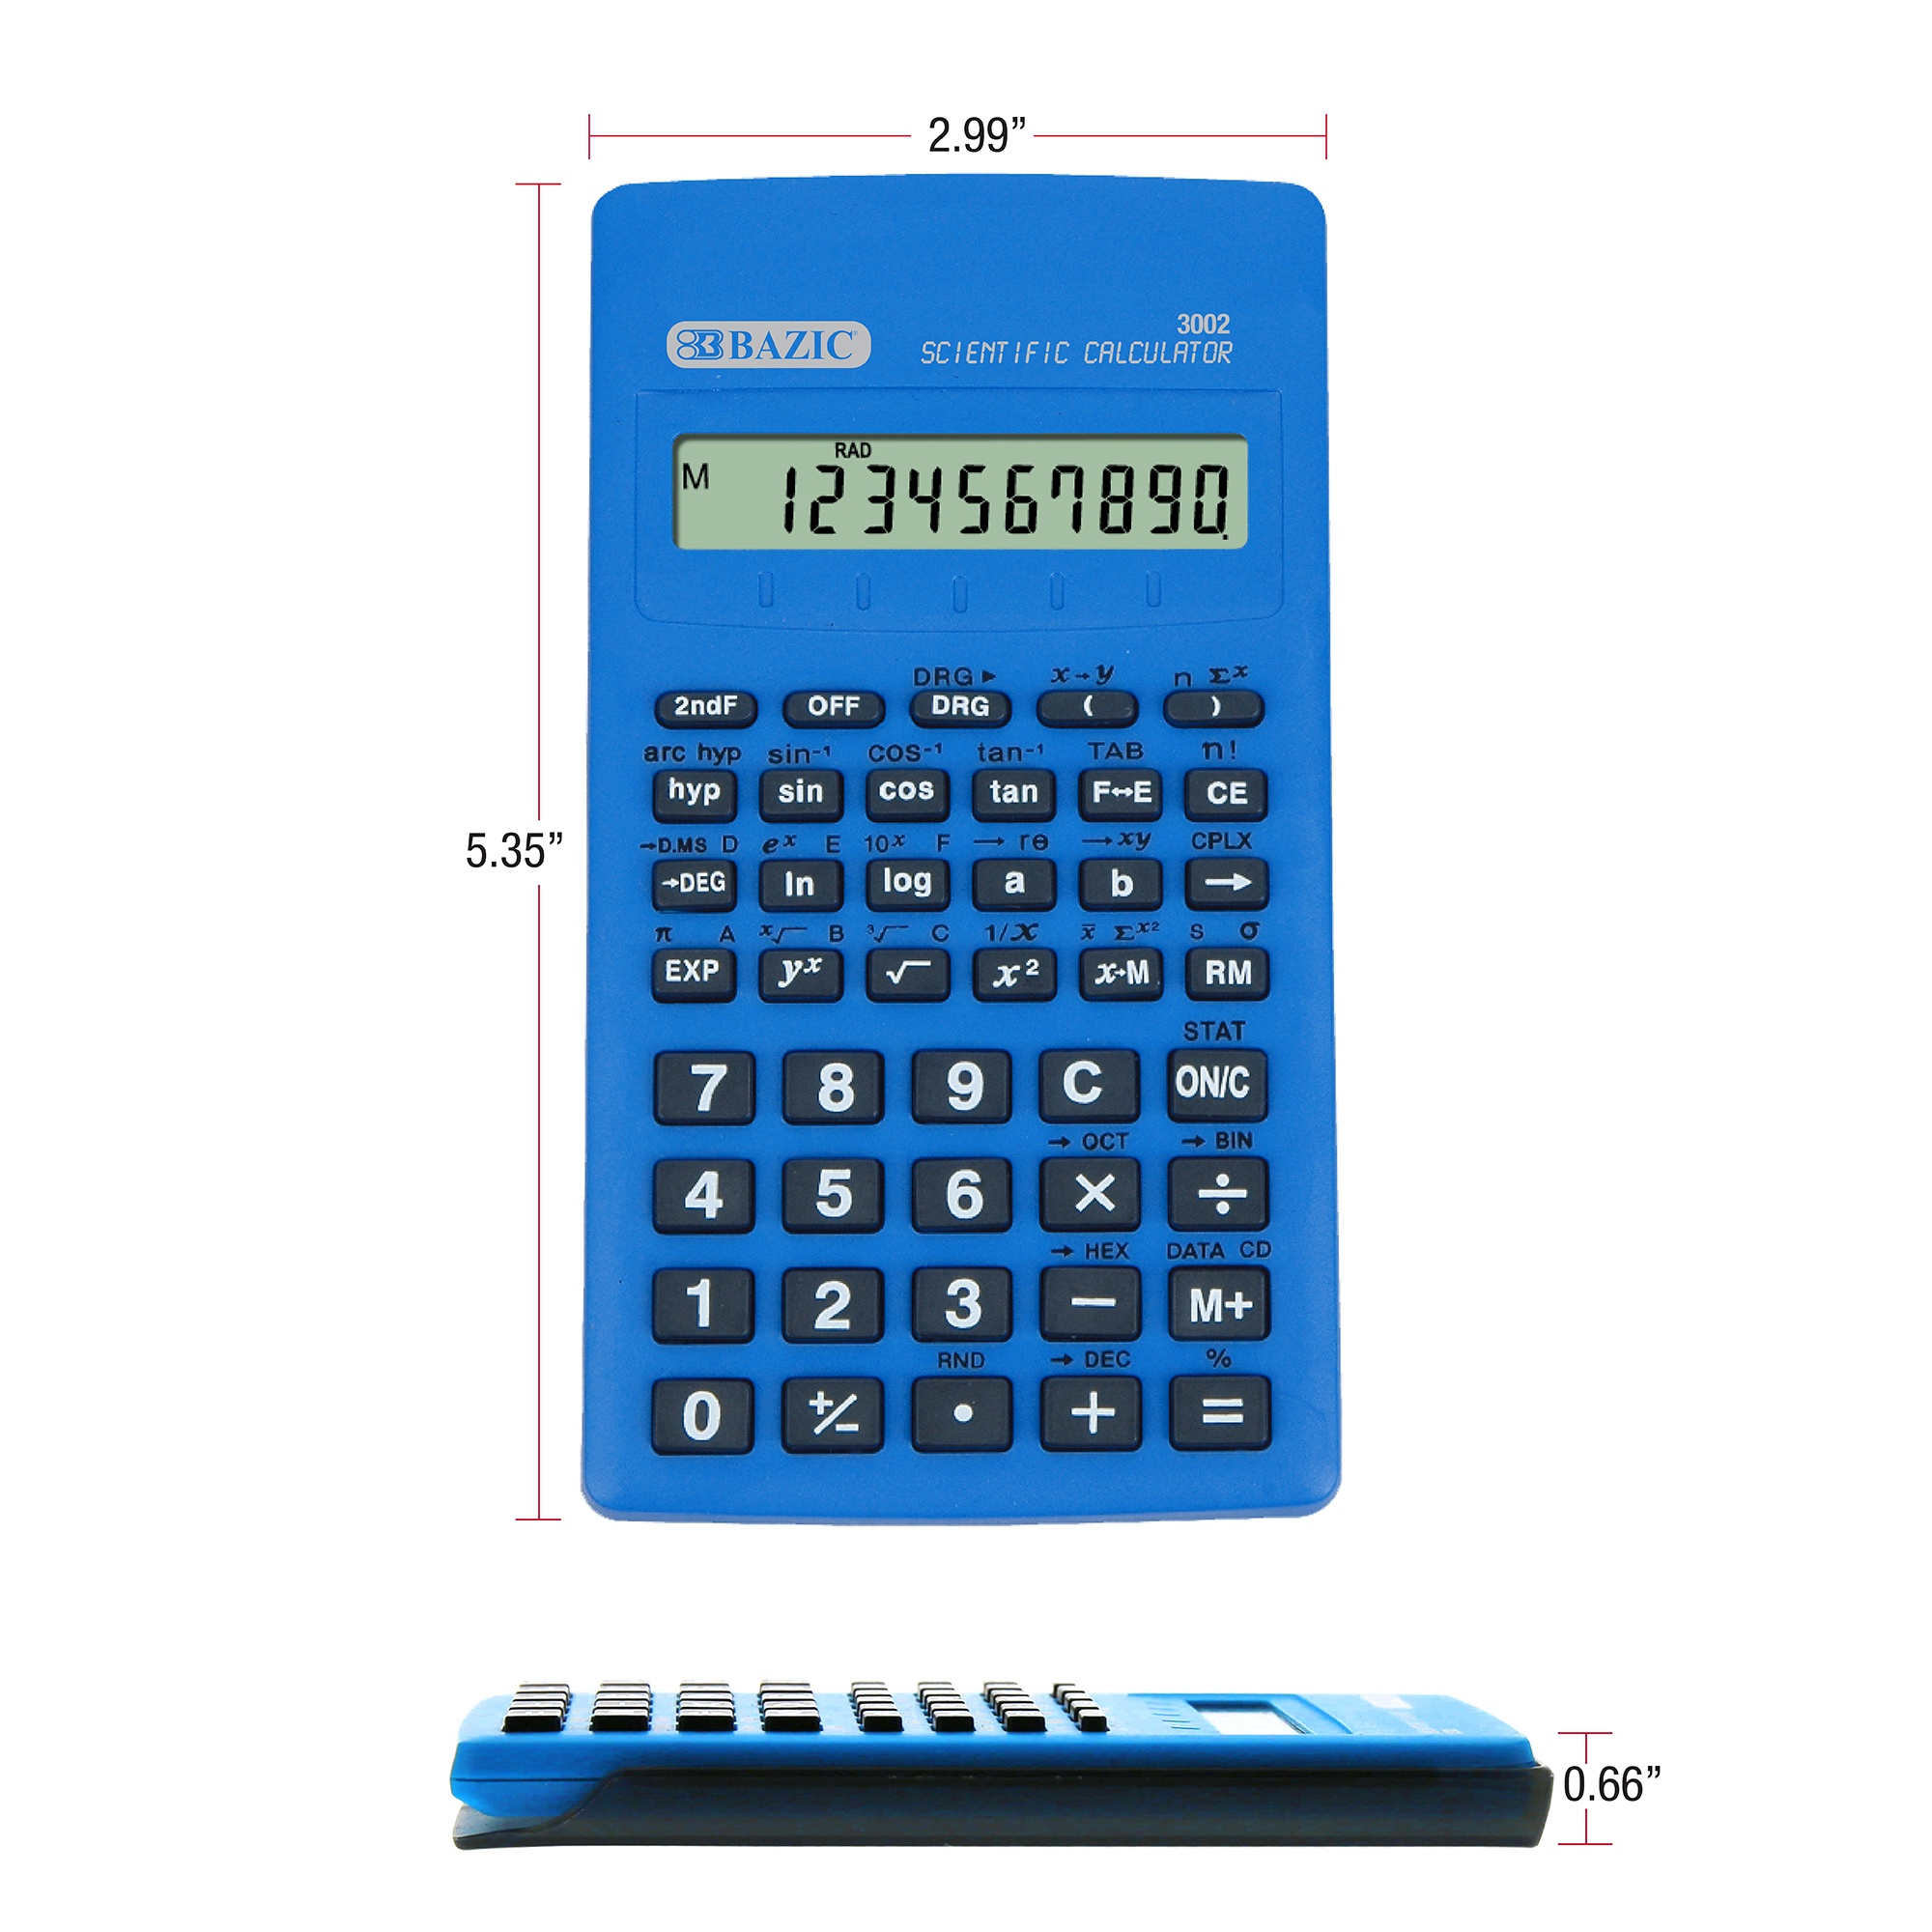 scientific calculator images